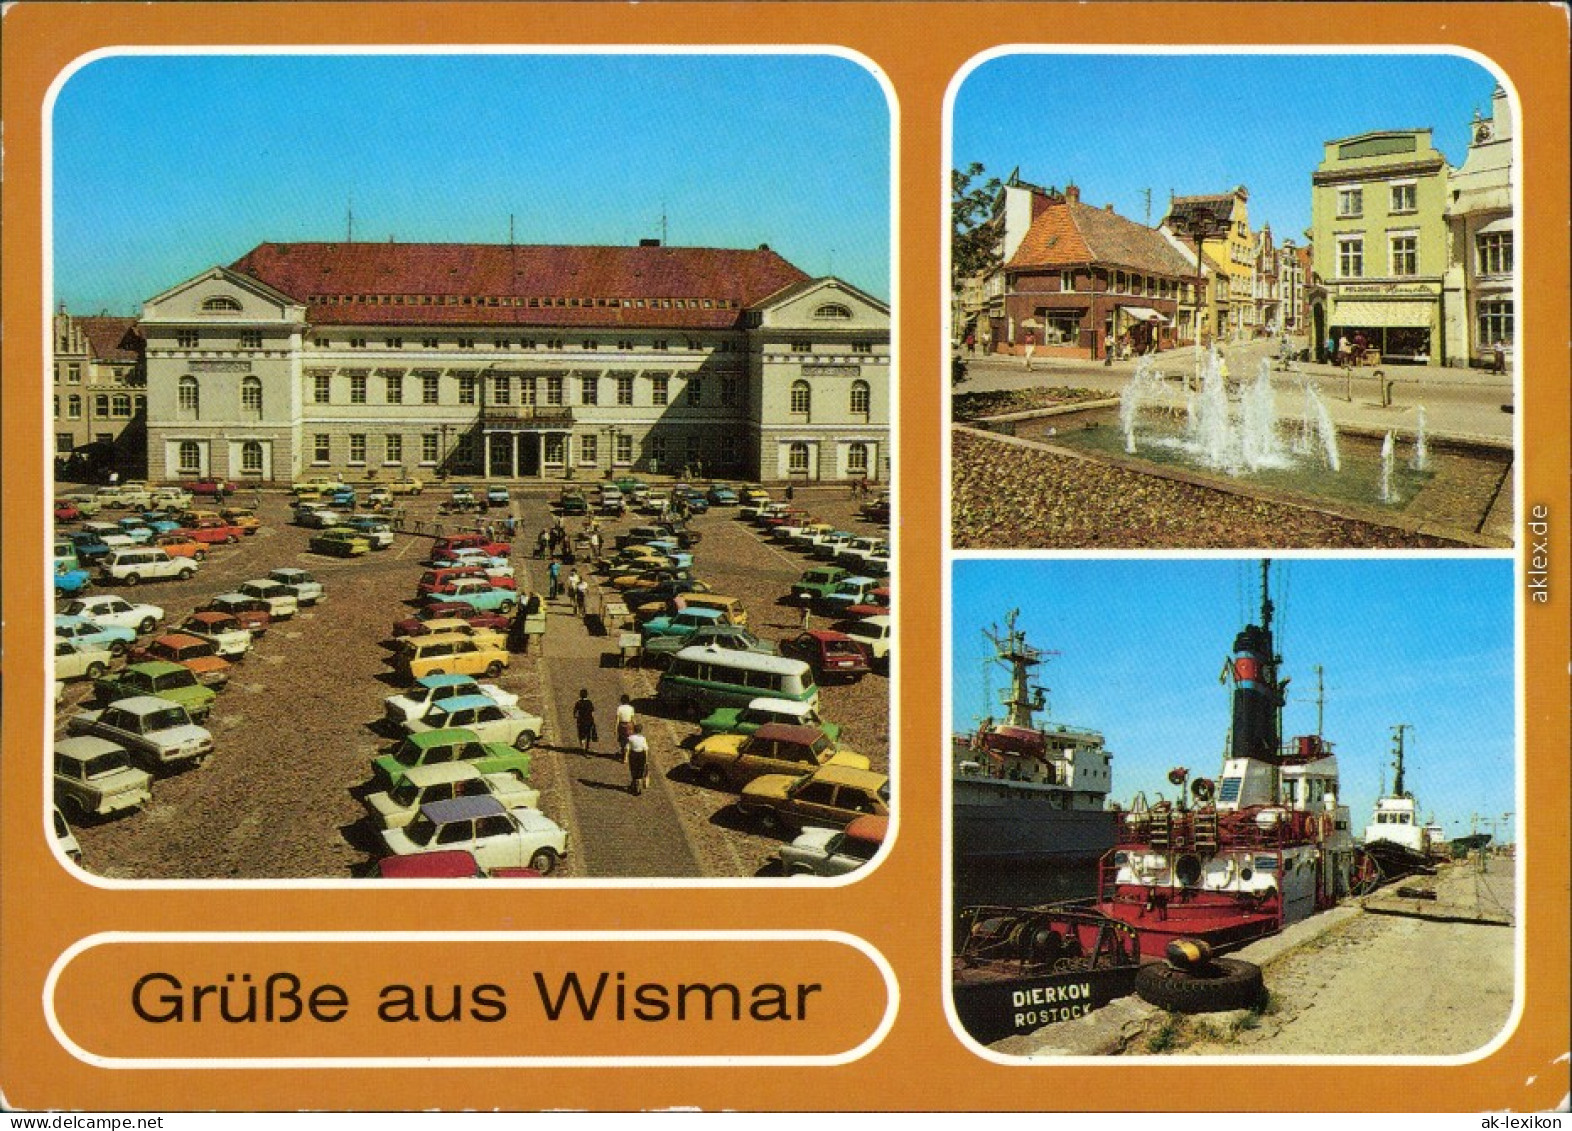 Wismar Marktplatz Mit Rathaus,   Der Krämerstraße, Schlepper Am Kai 1988 - Wismar